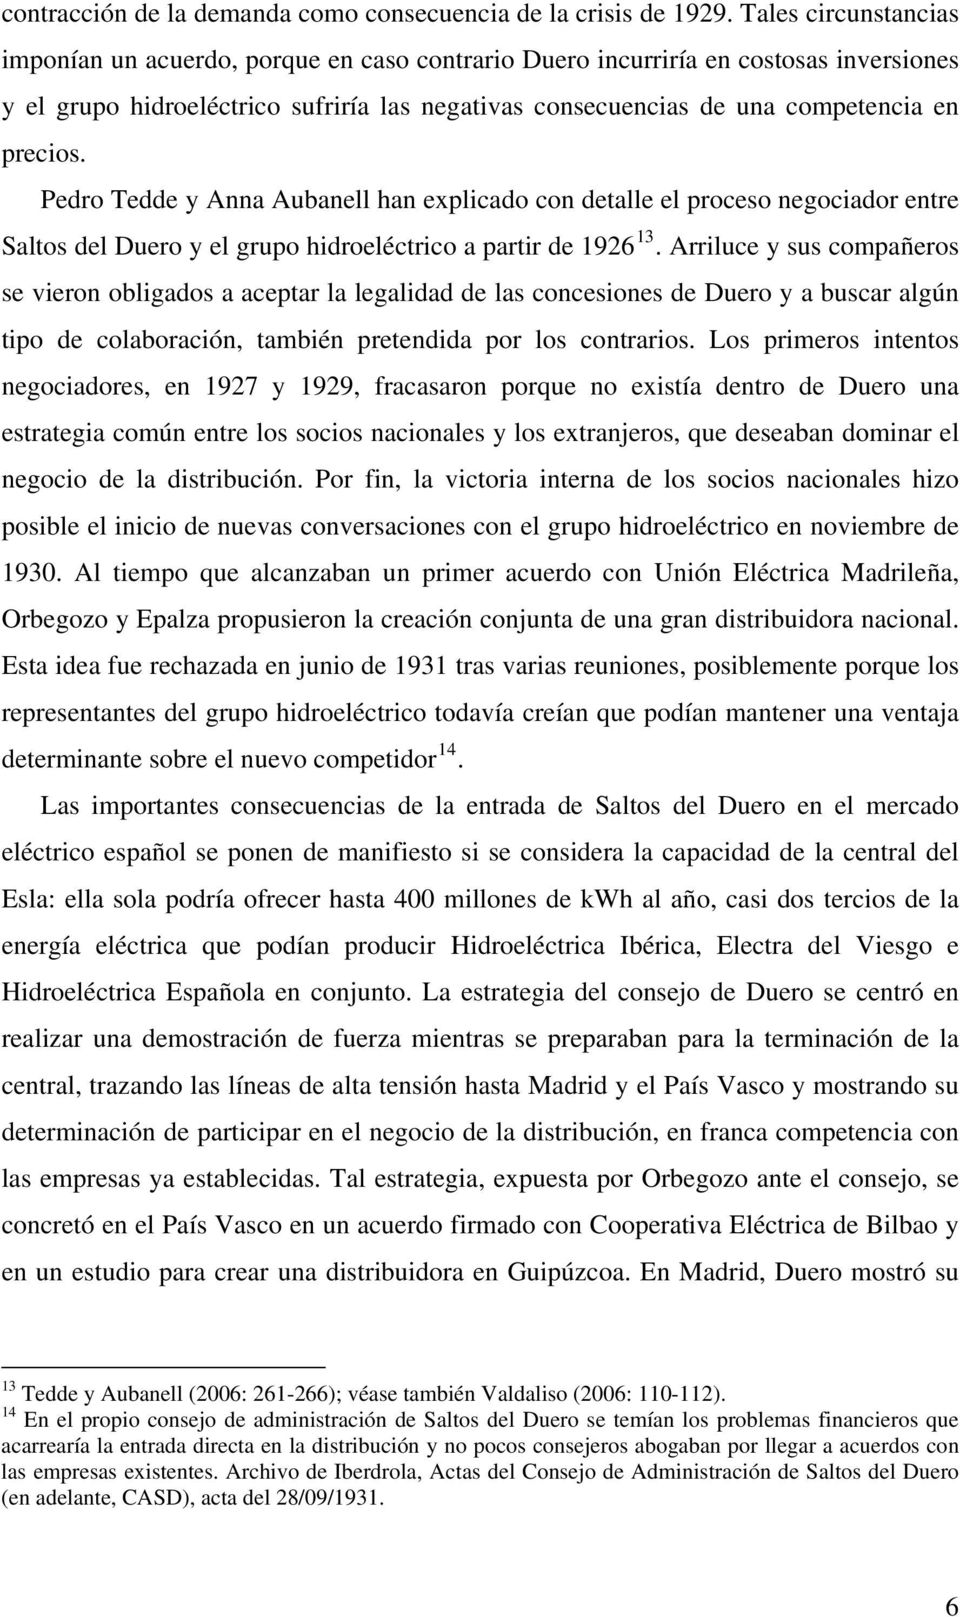 precios. Pedro Tedde y Anna Aubanell han explicado con detalle el proceso negociador entre Saltos del Duero y el grupo hidroeléctrico a partir de 1926 13.